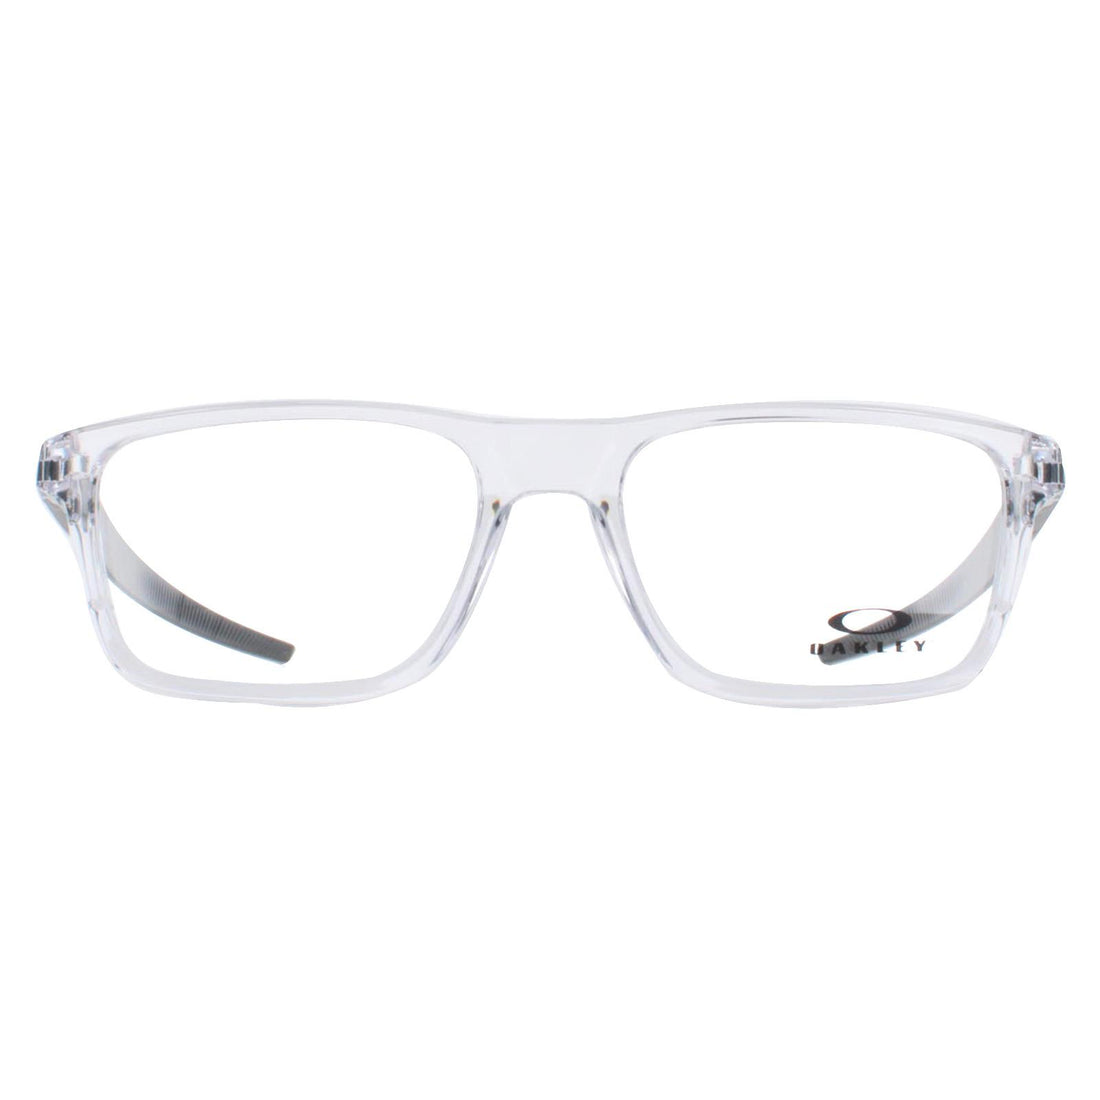 Oakley Glasses Frames OX8164 Port Bow 8164-02 Polished Clear Men